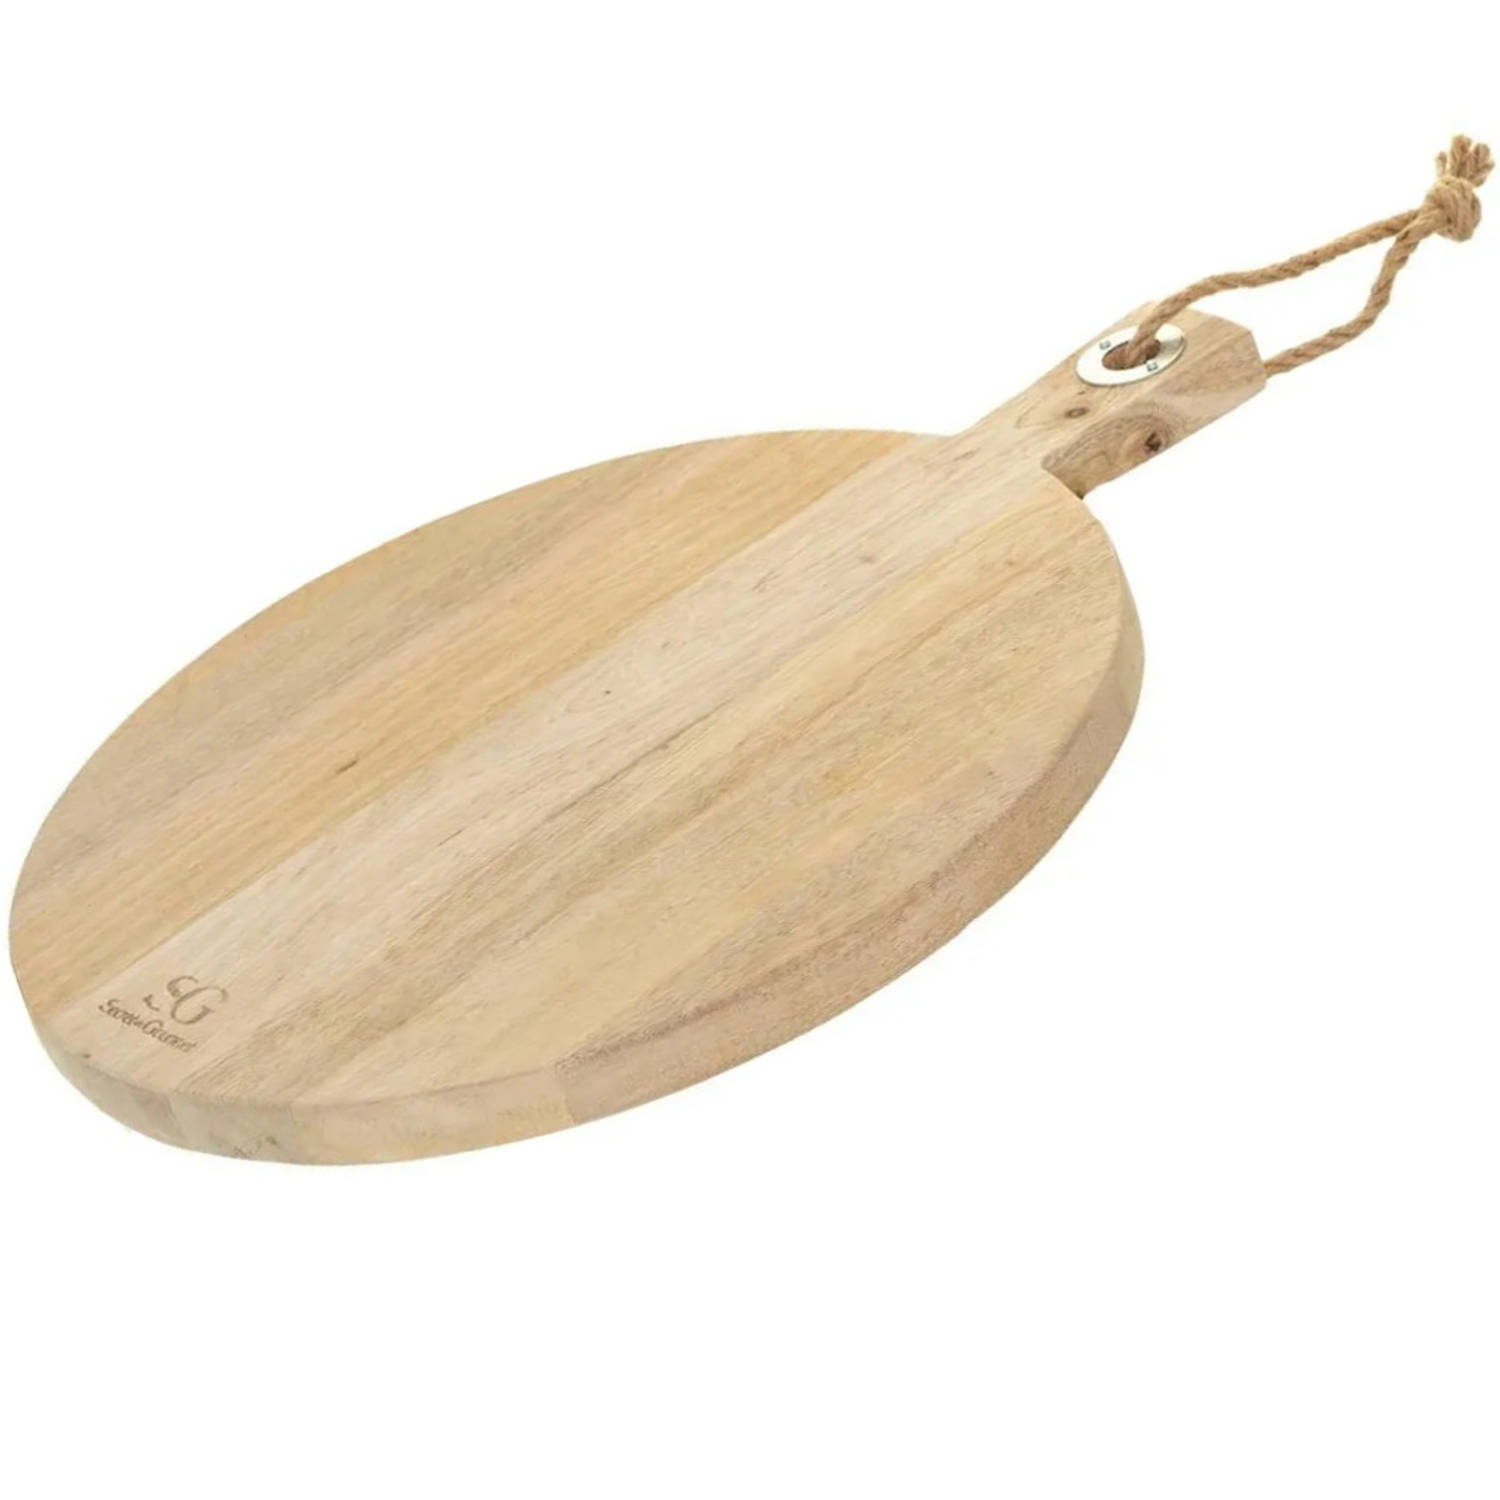 Snijplank rond met handvat 36 cm van mango hout - Serveerplank - Broodplank